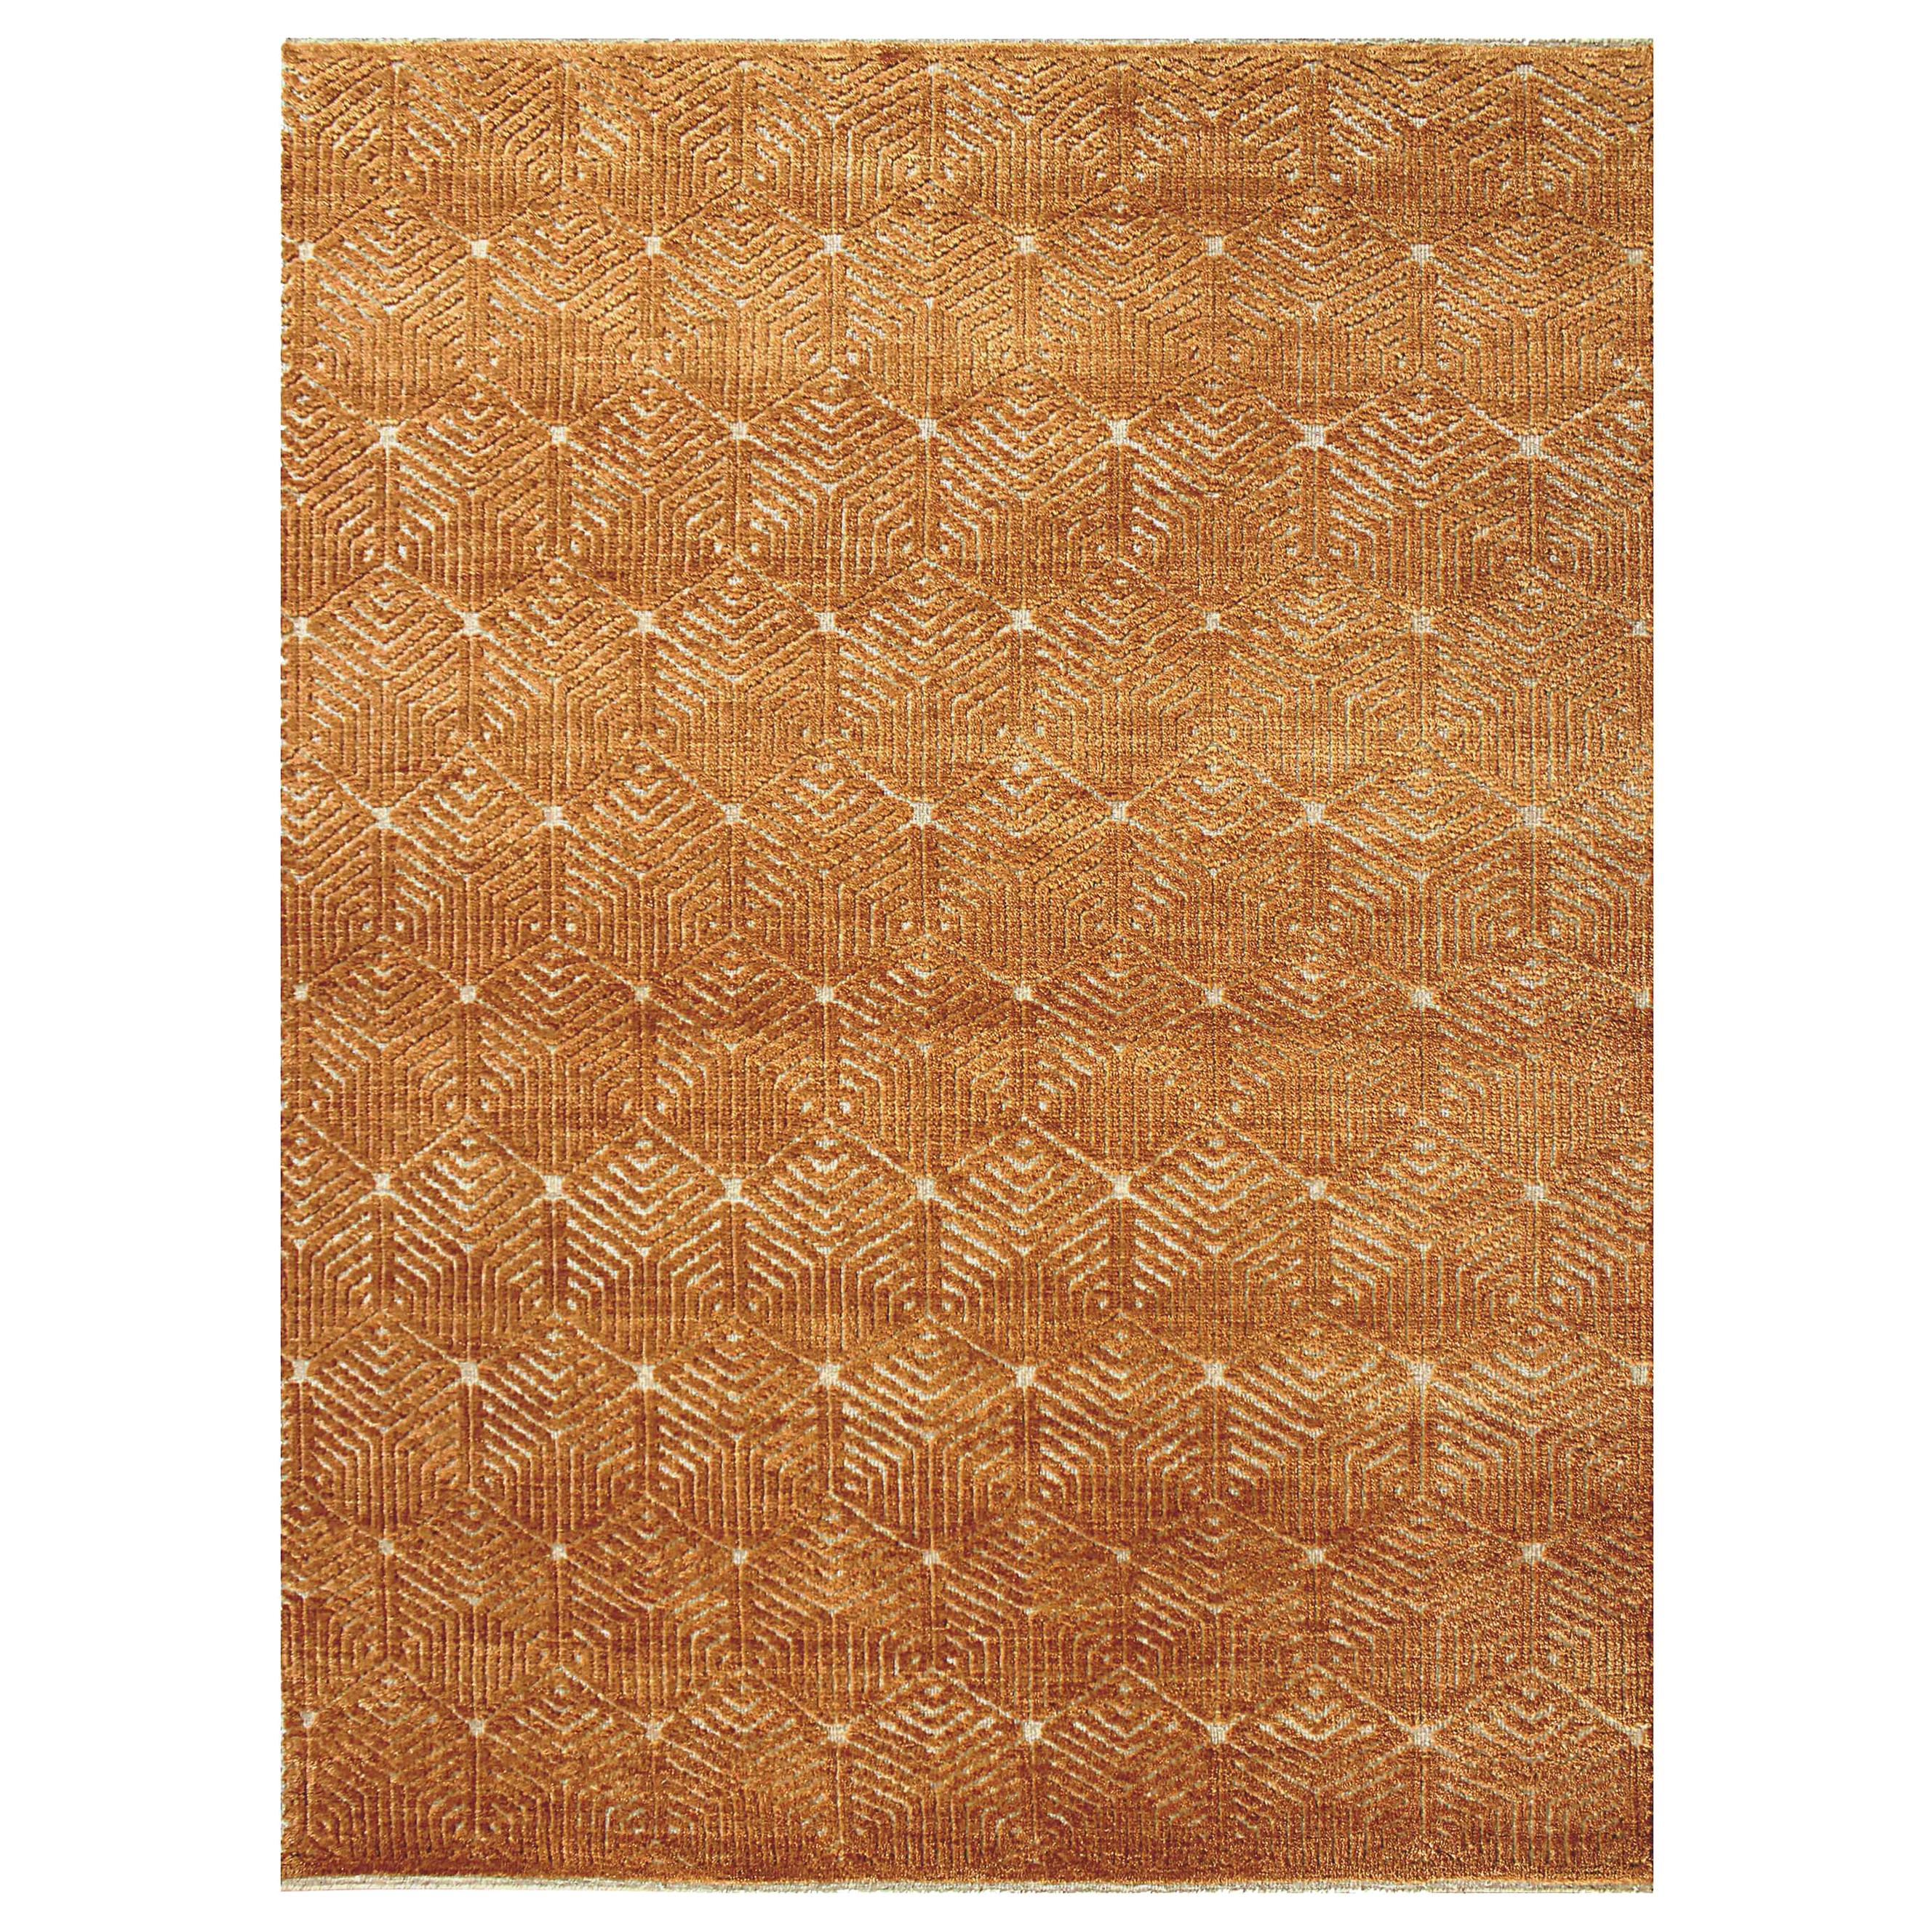 Neuer Teppich aus der Cameron-Kollektion mit modernen Design-Mustern und Farben